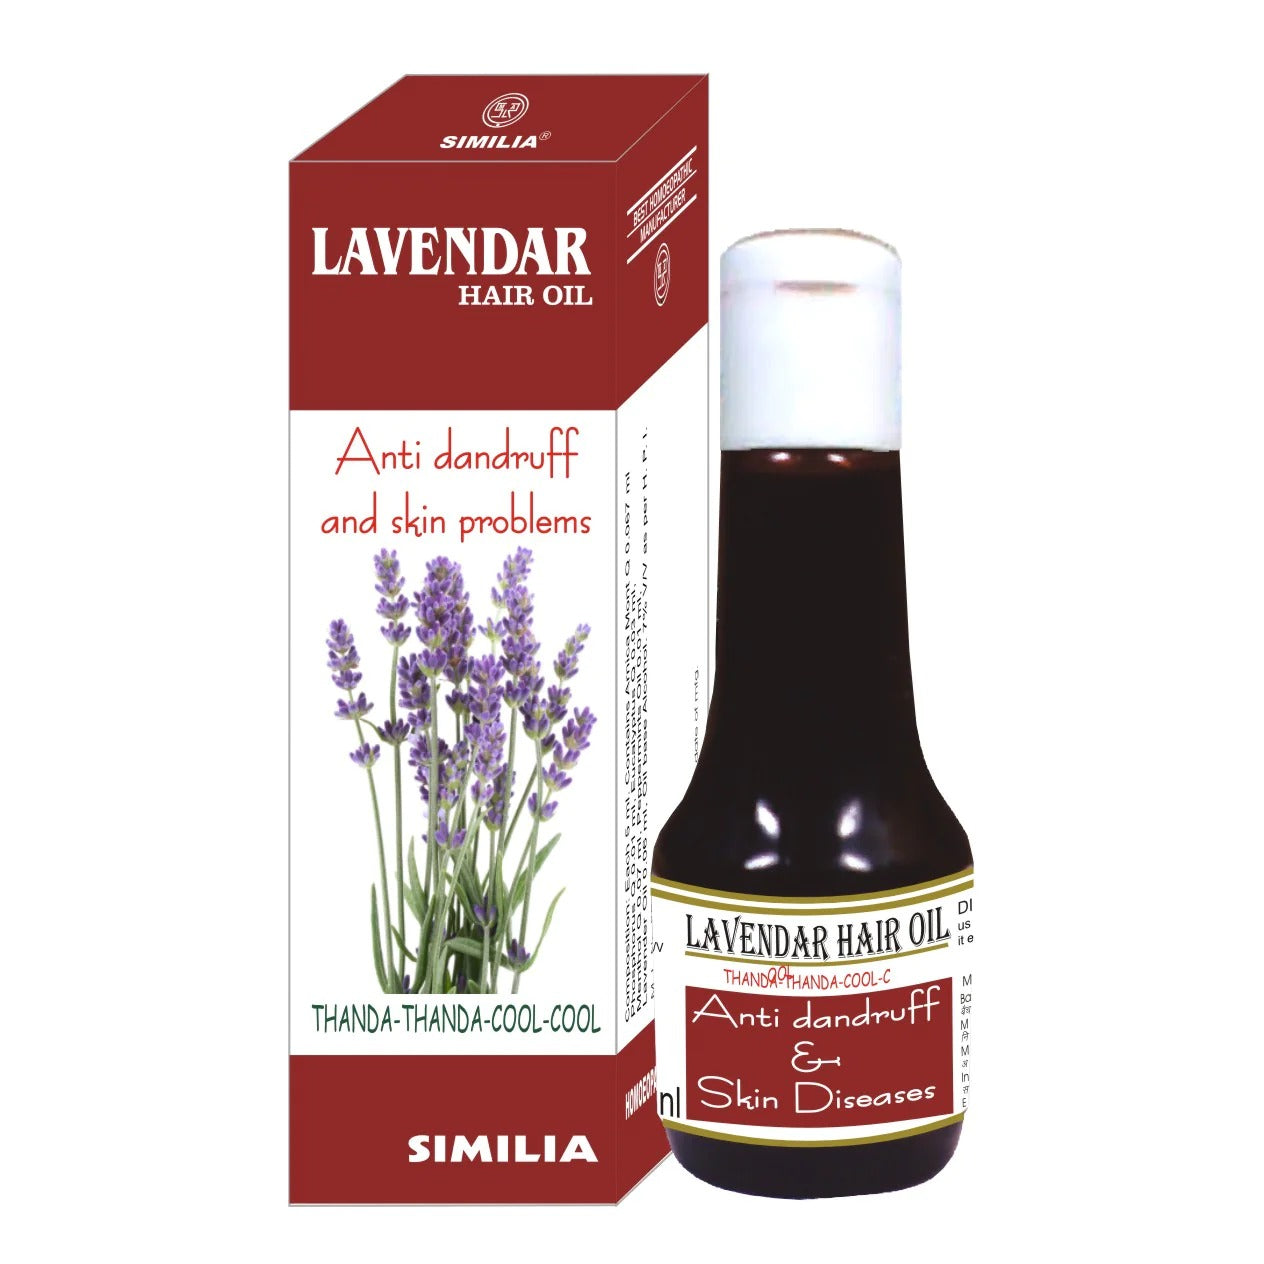 Similia Lavendar Hair Oil (30ml)